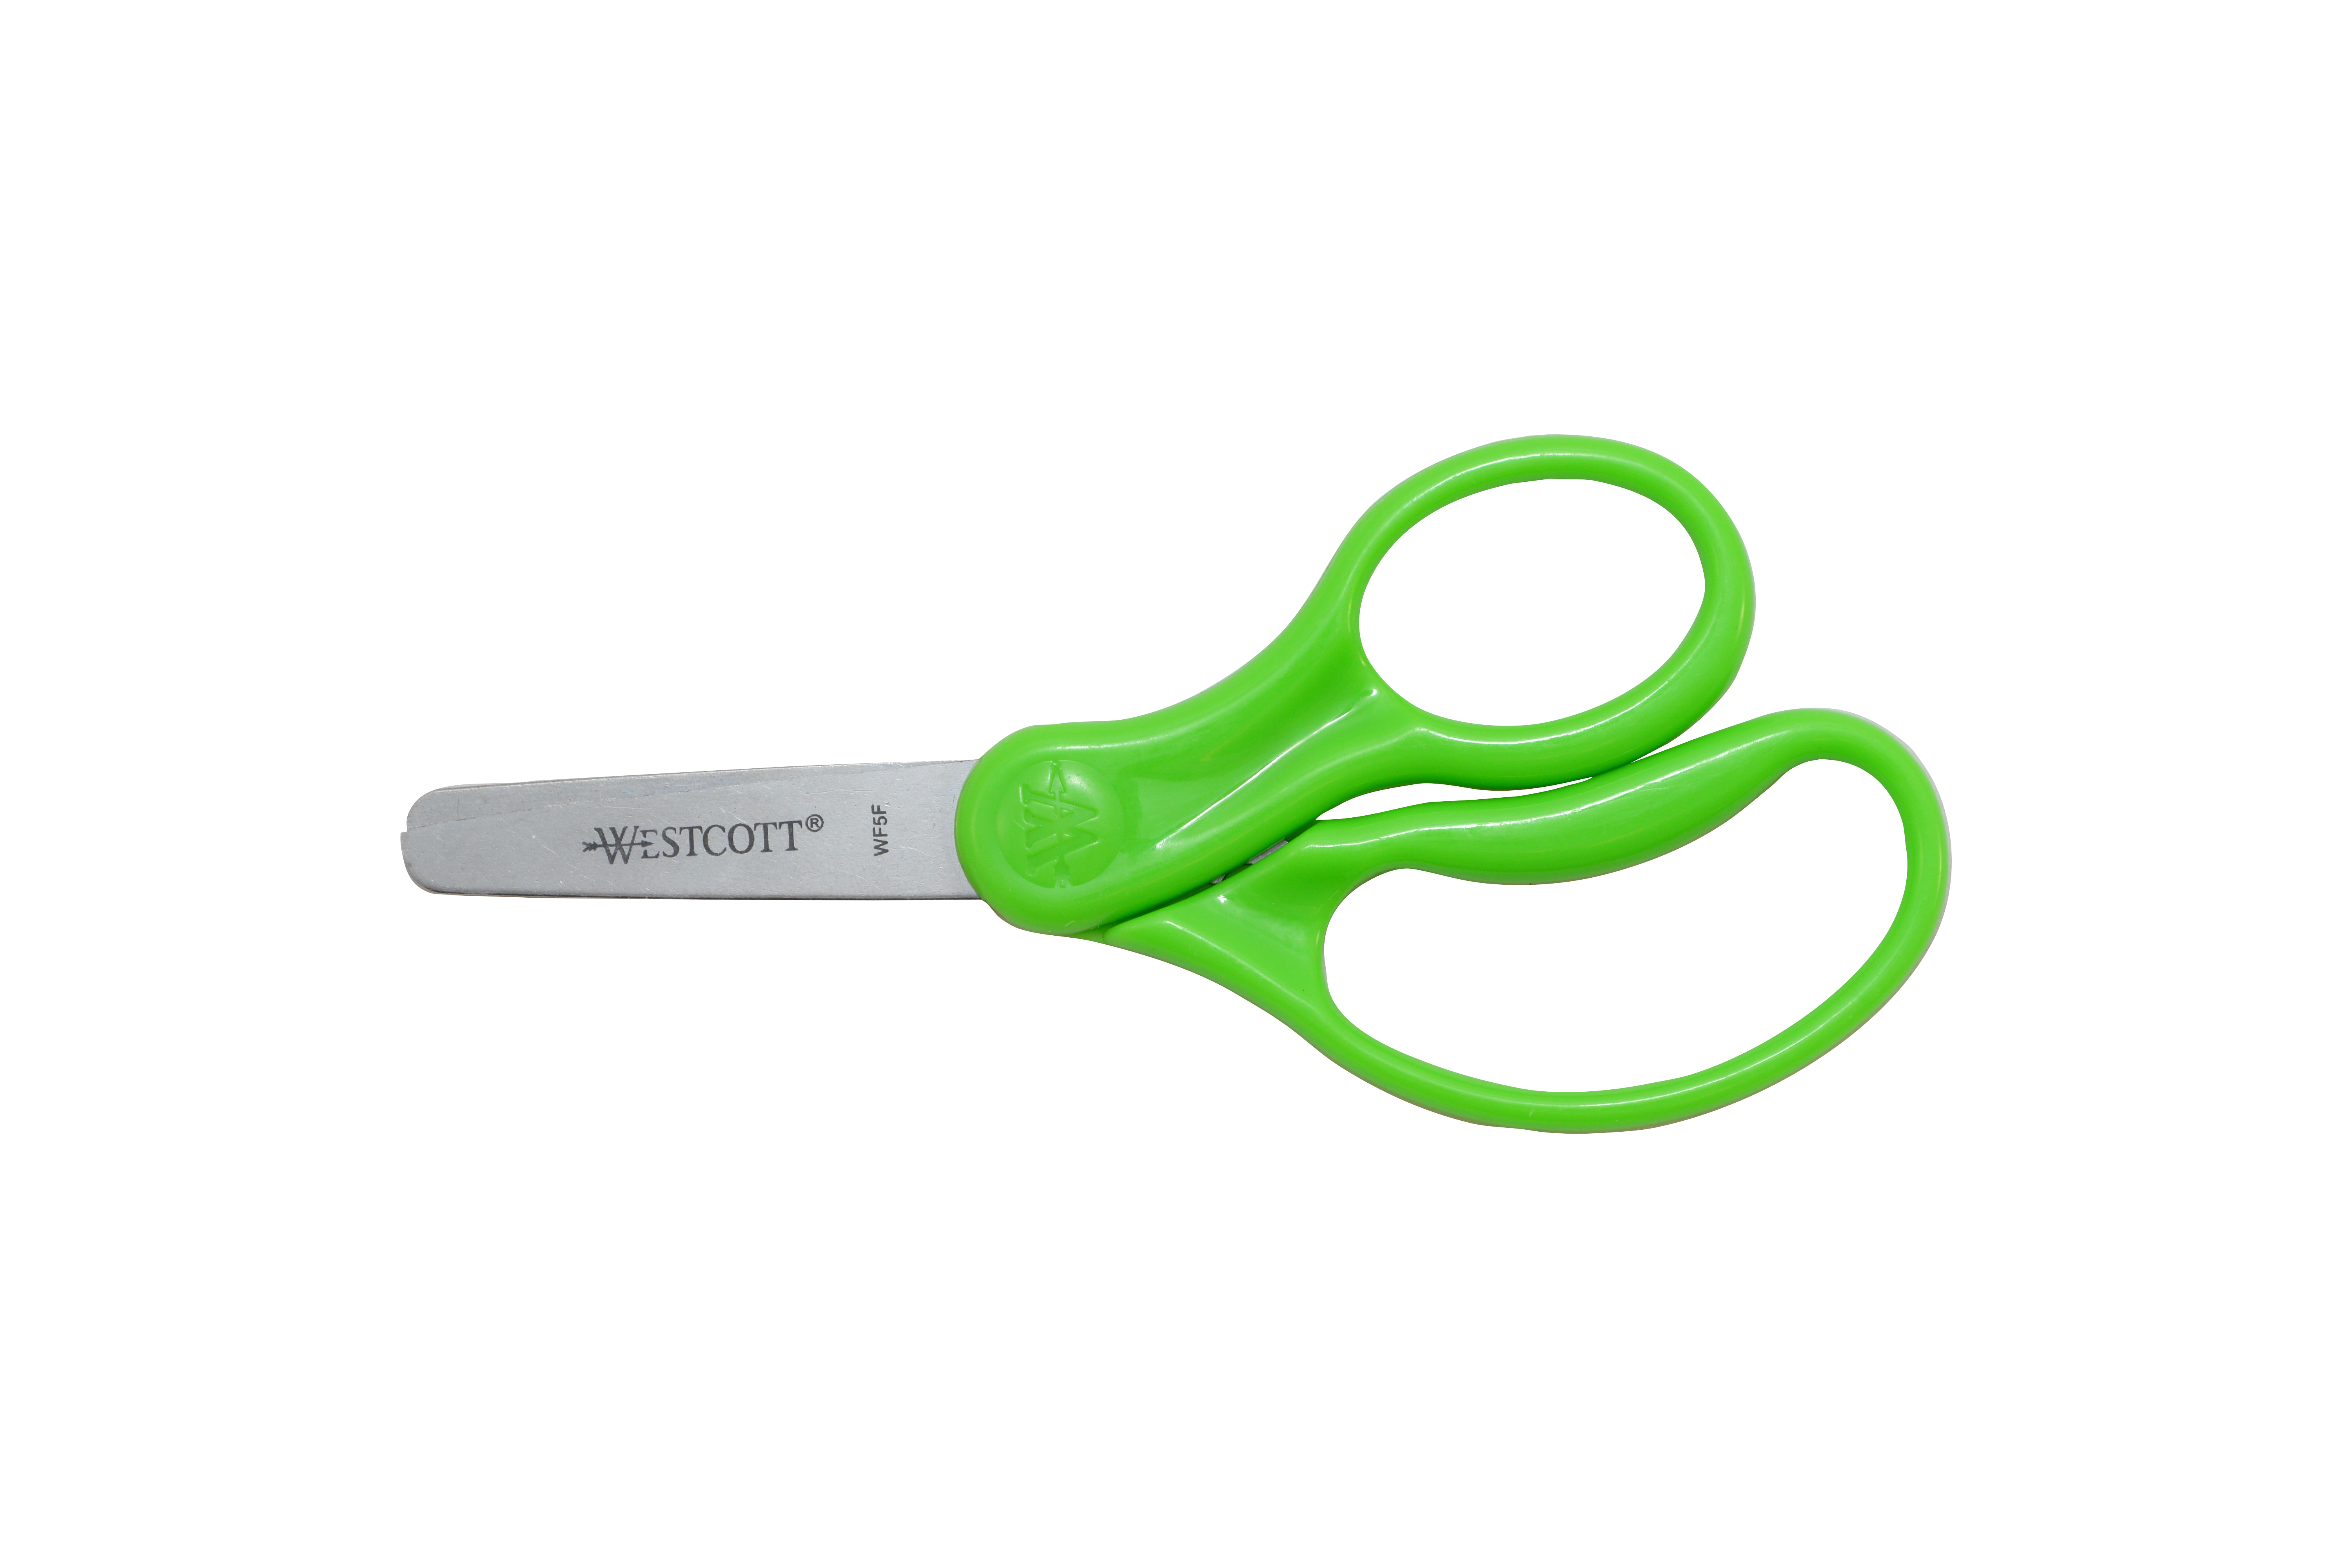 Westcott 5" Hard Handle Kids Scissors, Blunt, Assorted Colors (13130)